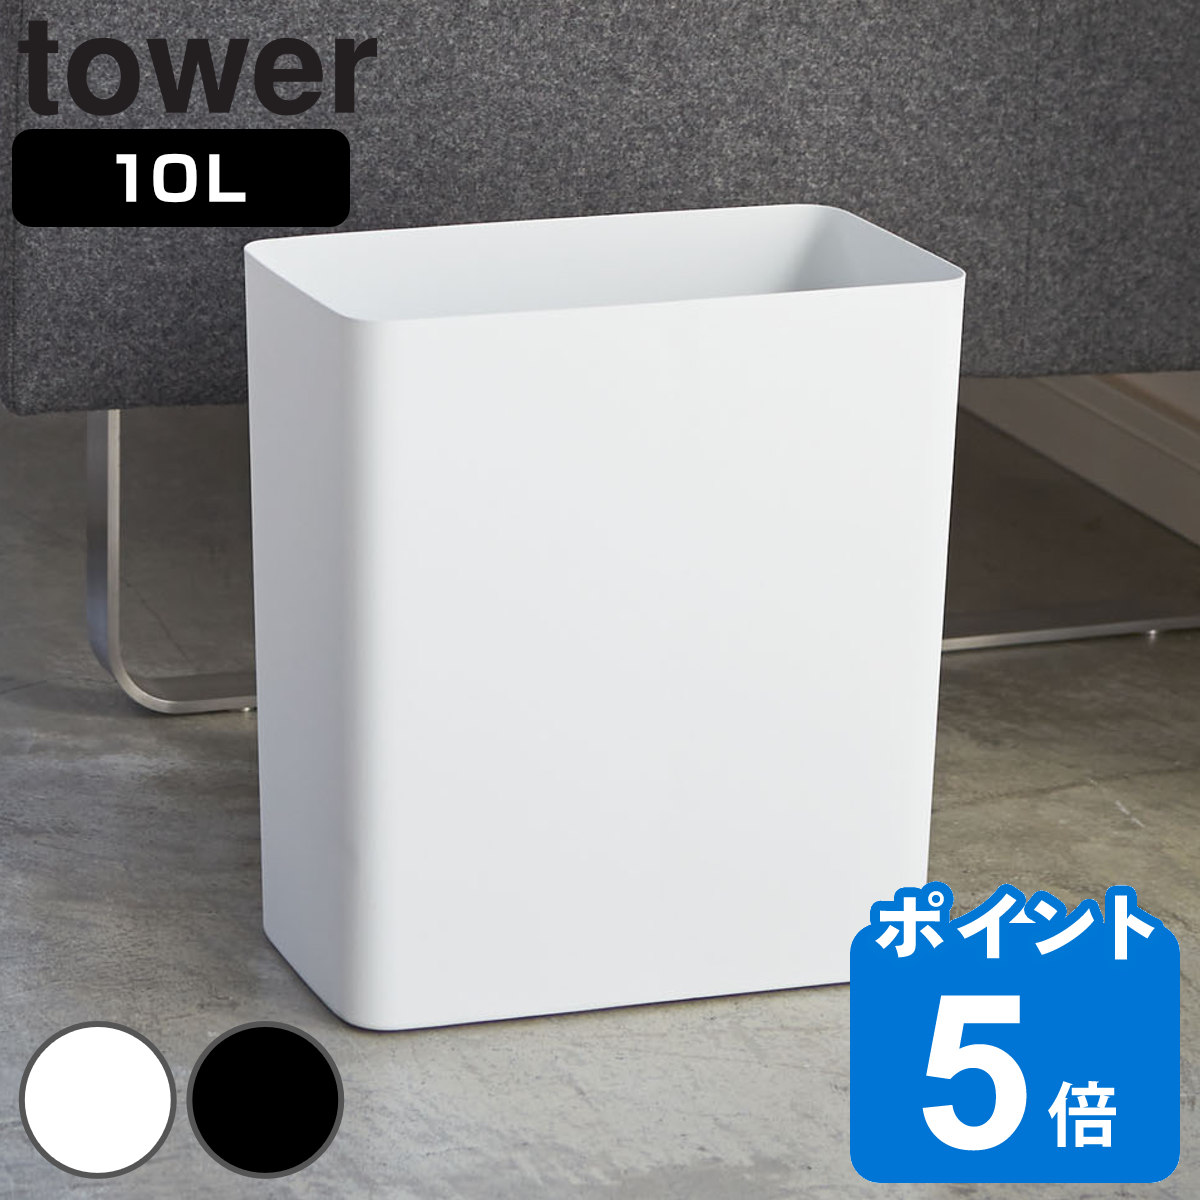 山崎実業 tower トラッシュカン タワー 角型